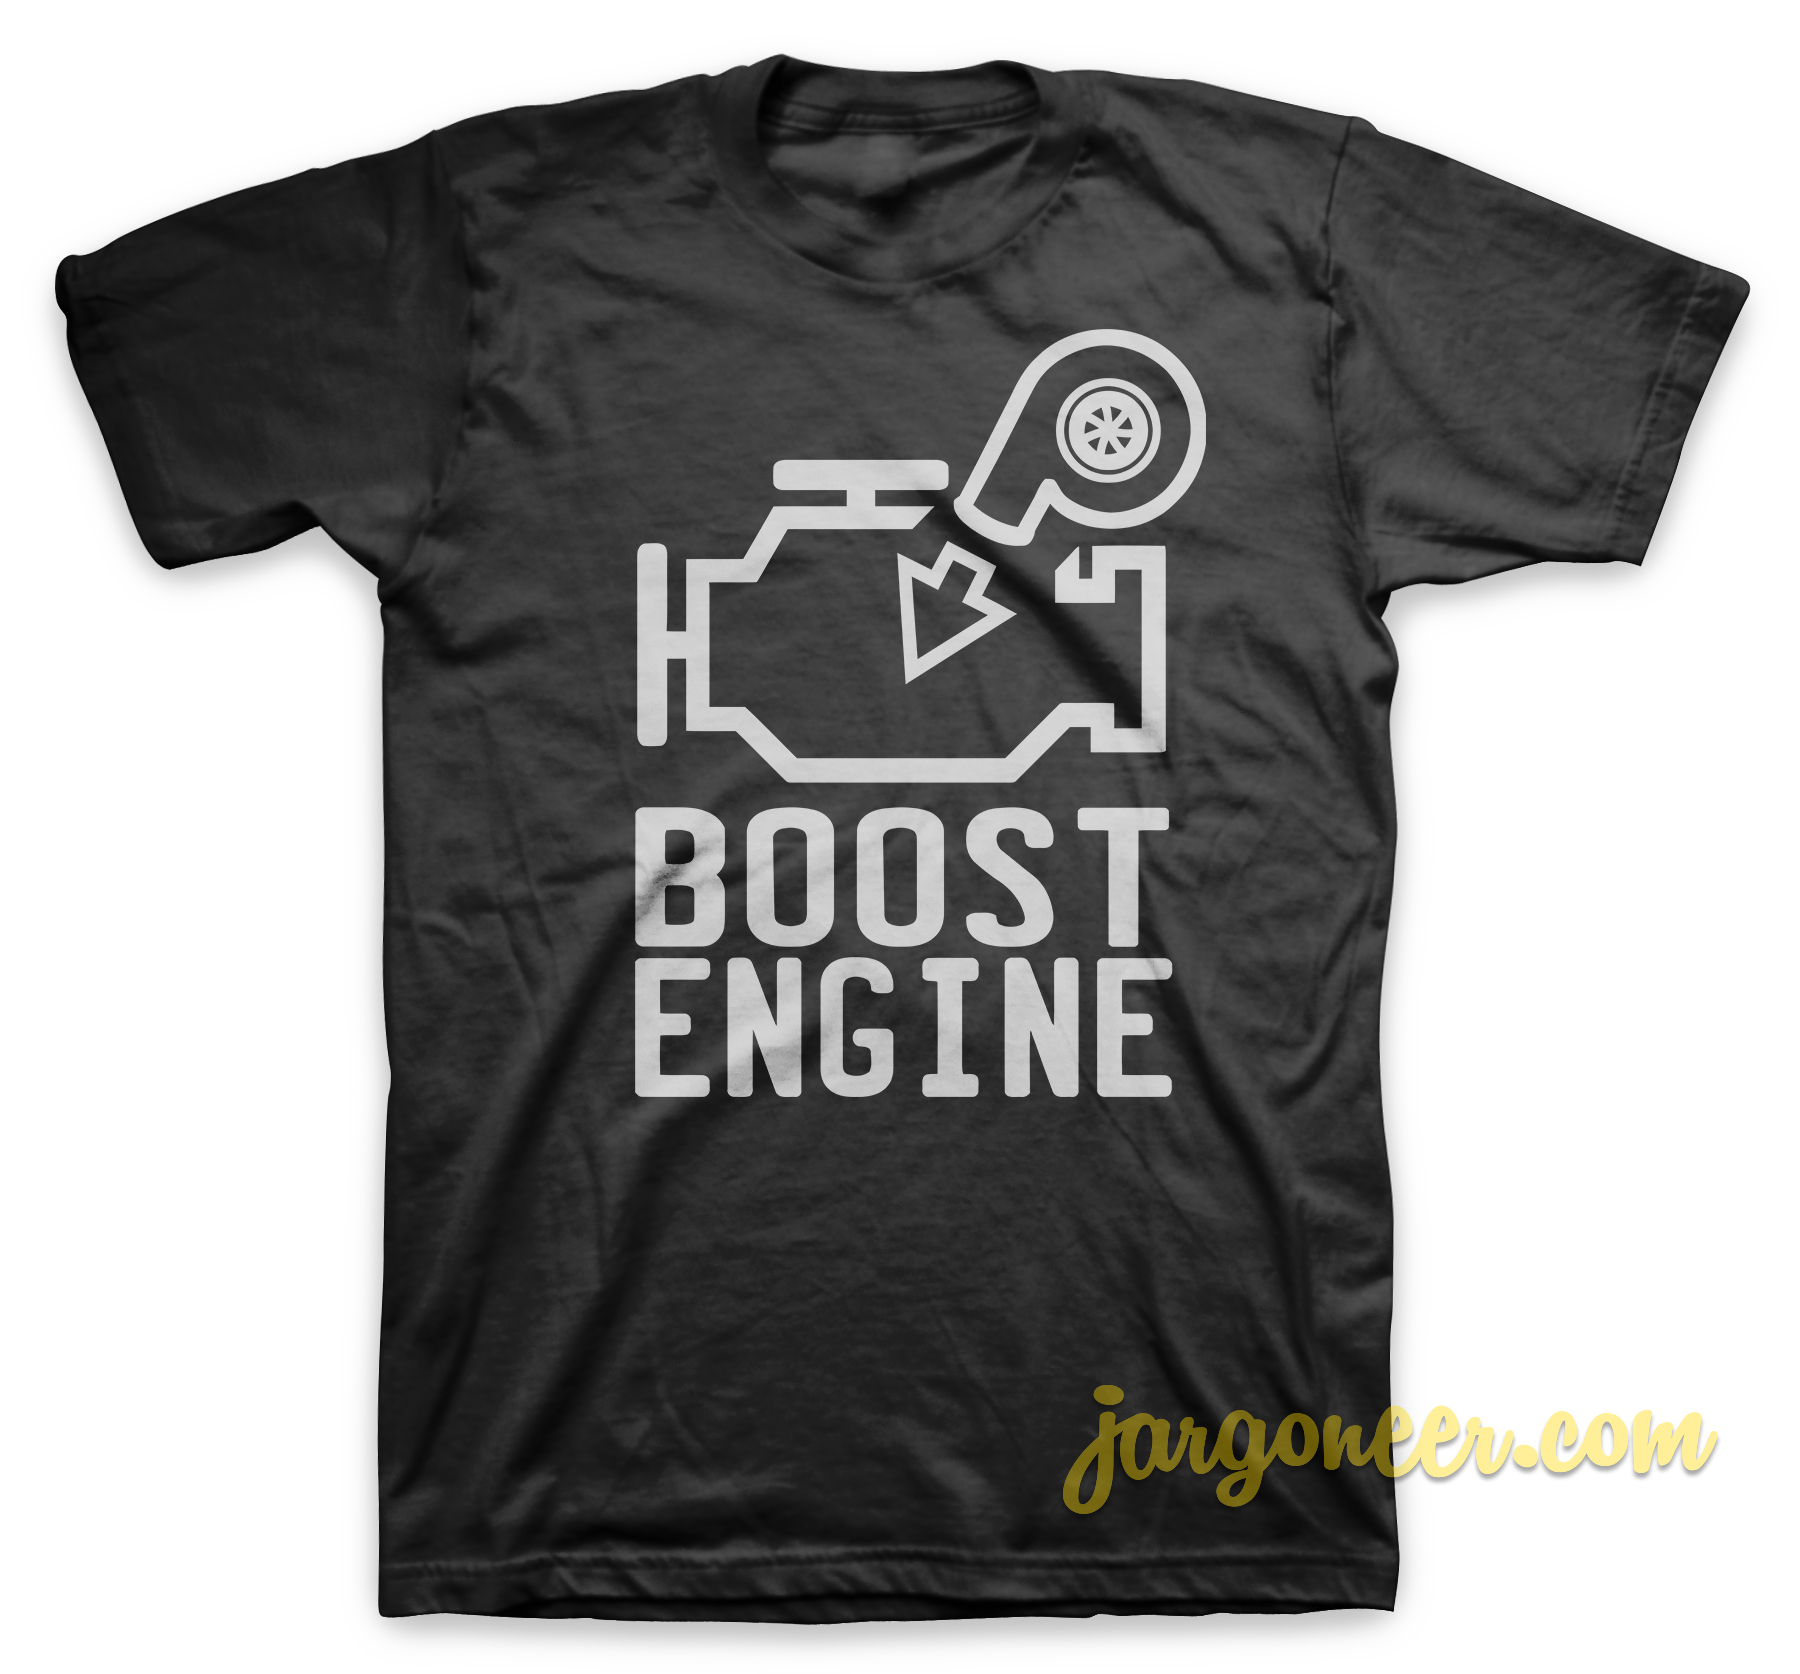 Boost Engine Black T Shirt - Shop Unique Graphic Cool Shirt Designs